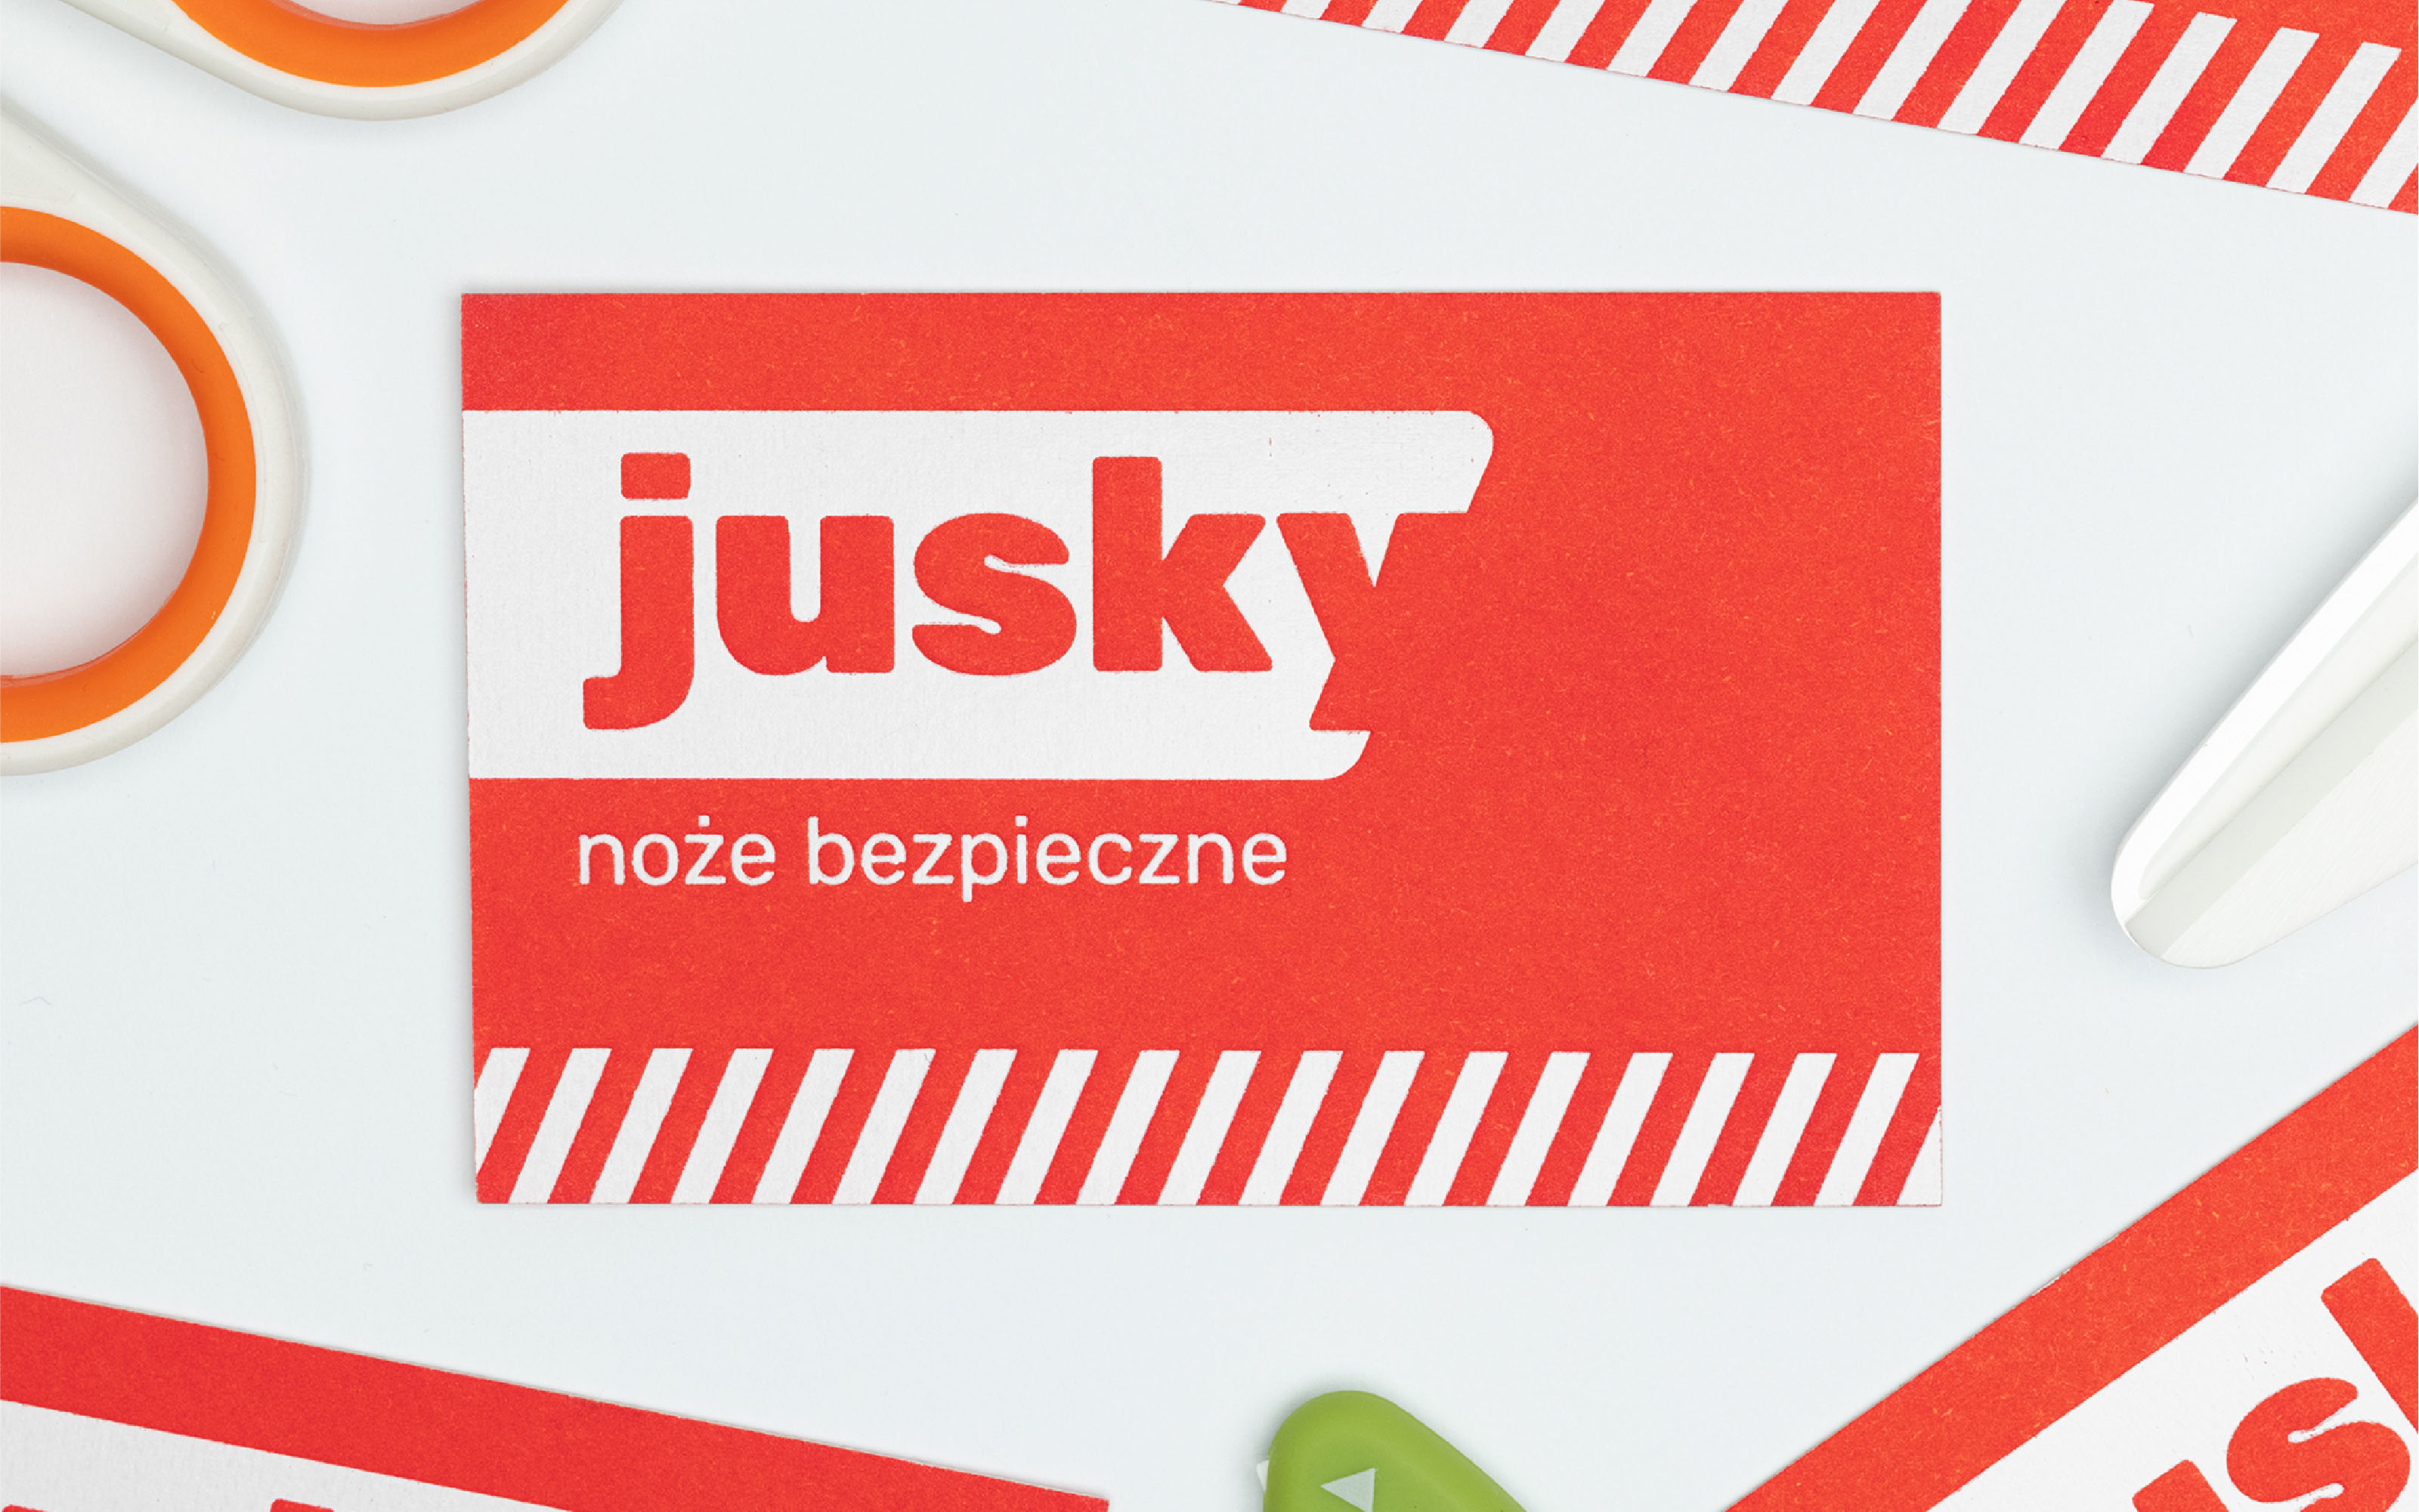 Jusky wizytówka z logo i tagline